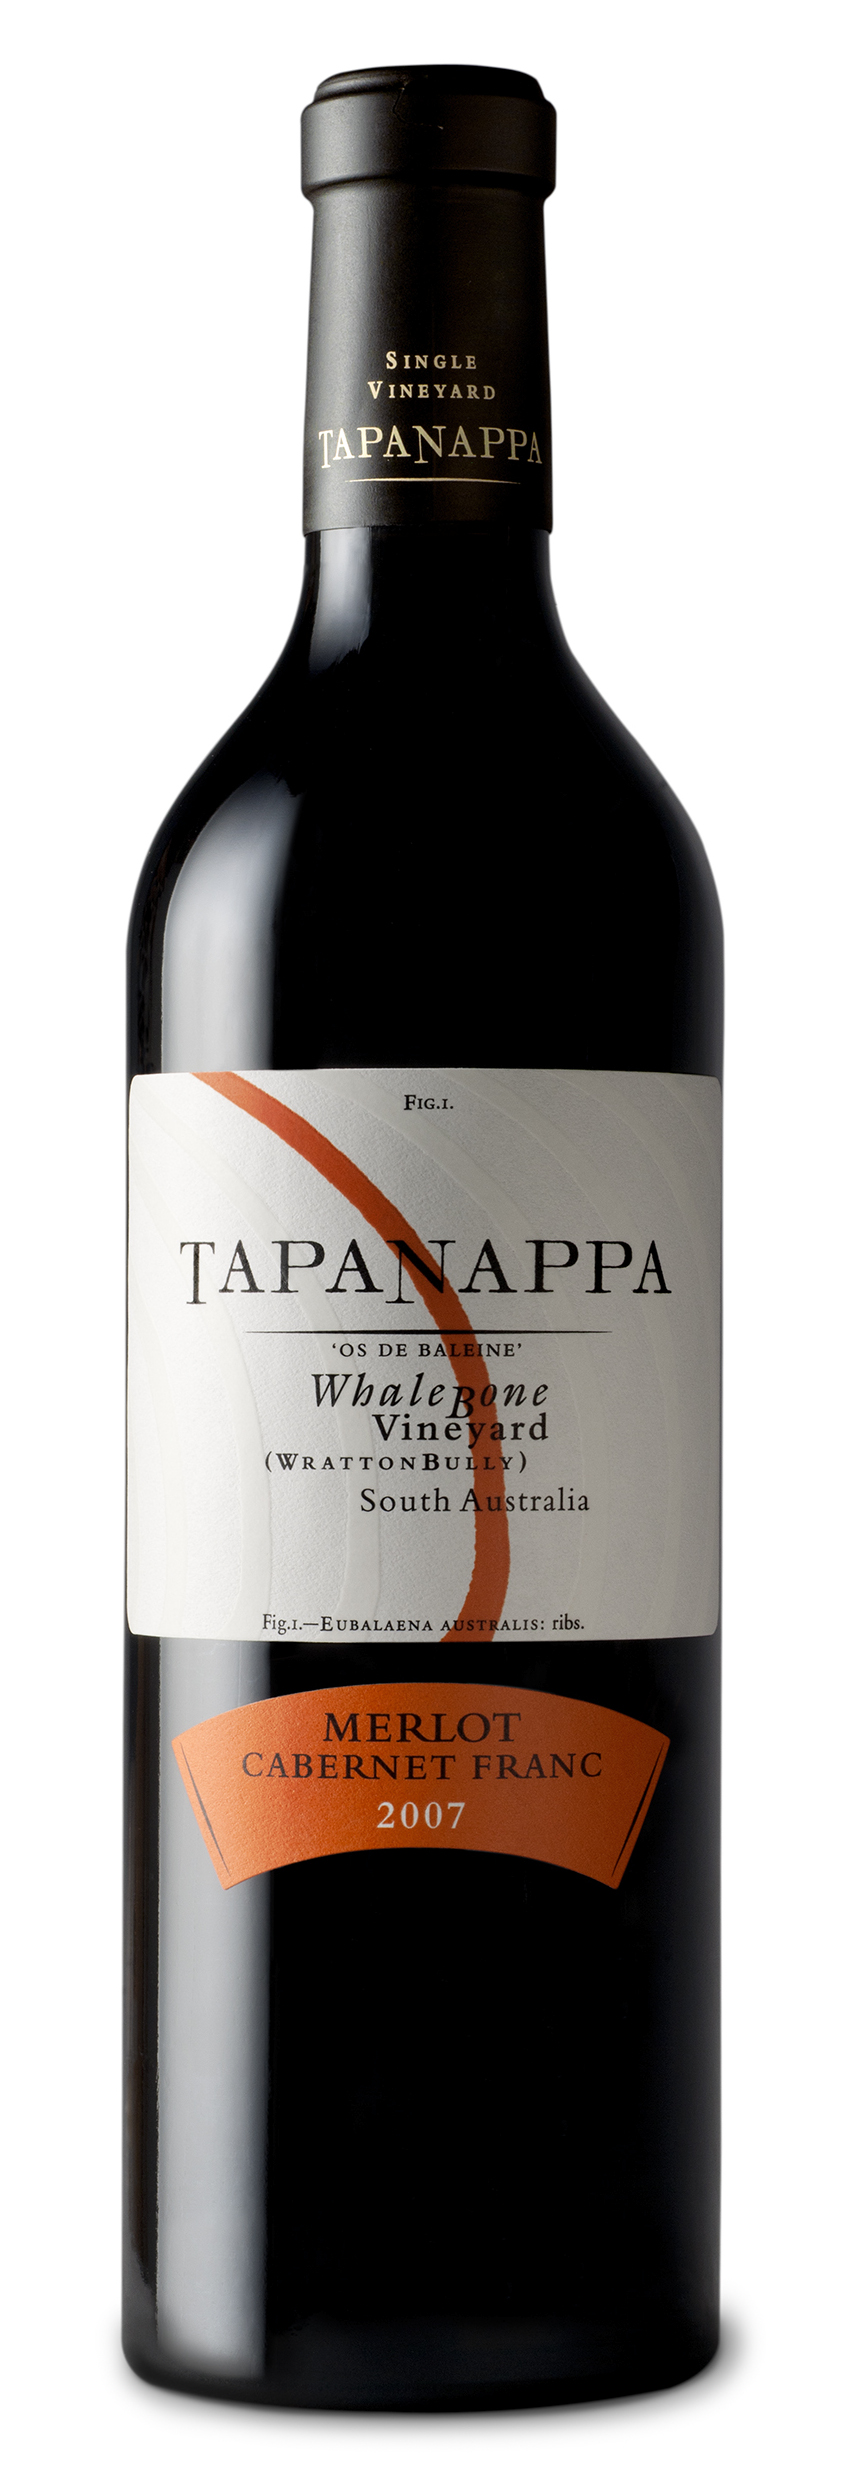 Tapanappa Whalebone Vineyard 2007 Merlot Cabernet Franc bottleshot